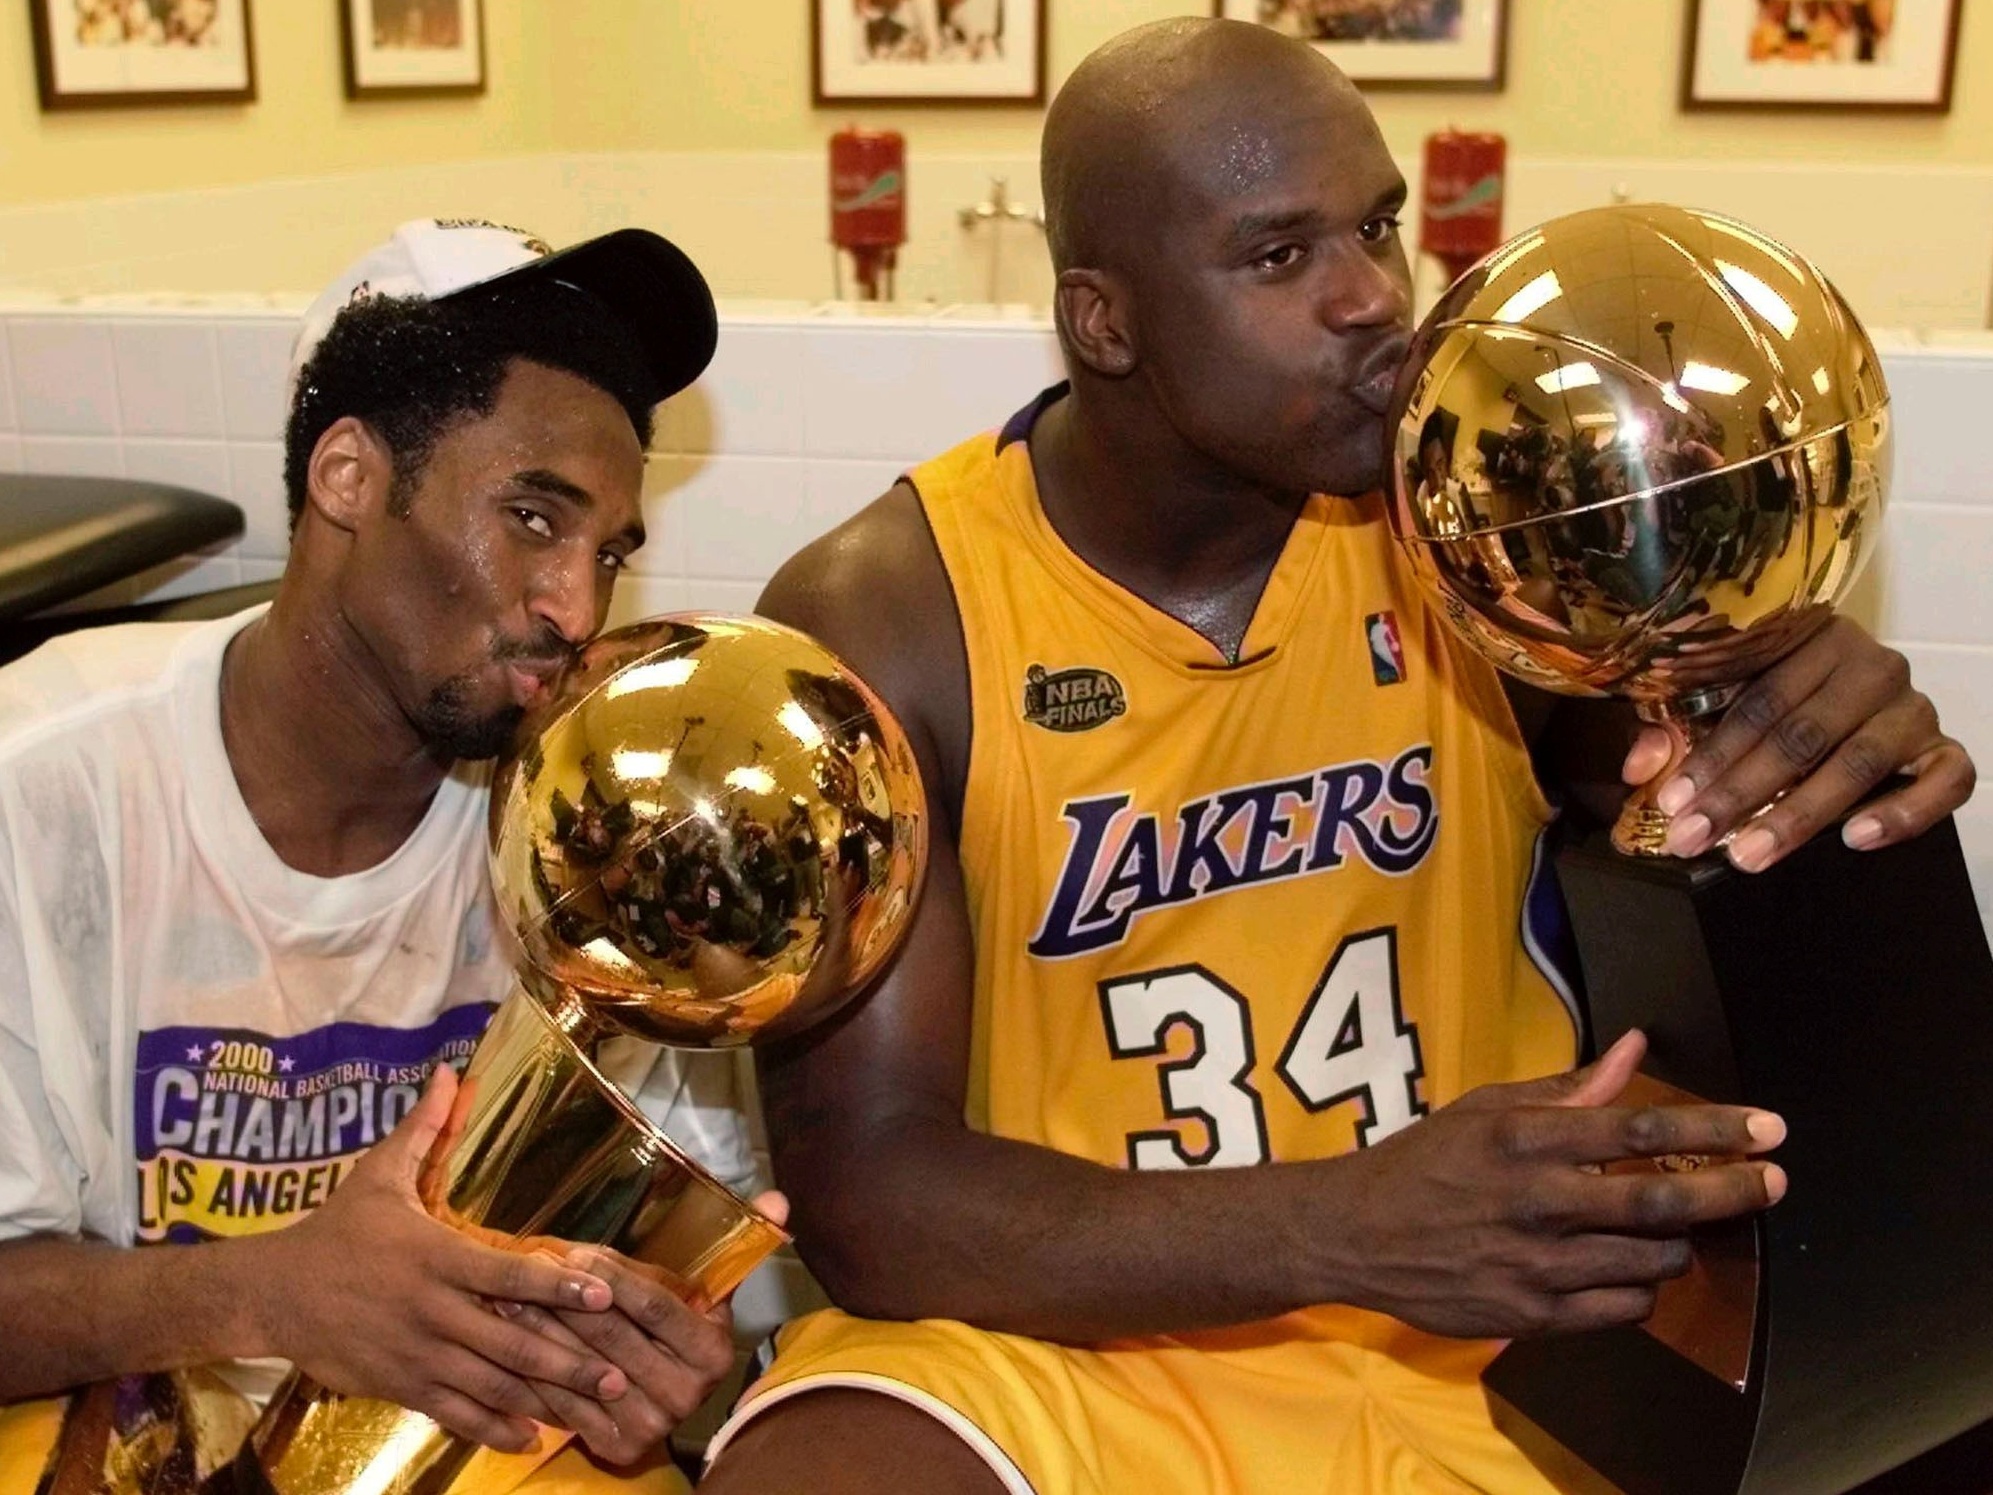 Kobe Bryant: um dos maiores jogadores de basquete de todos os